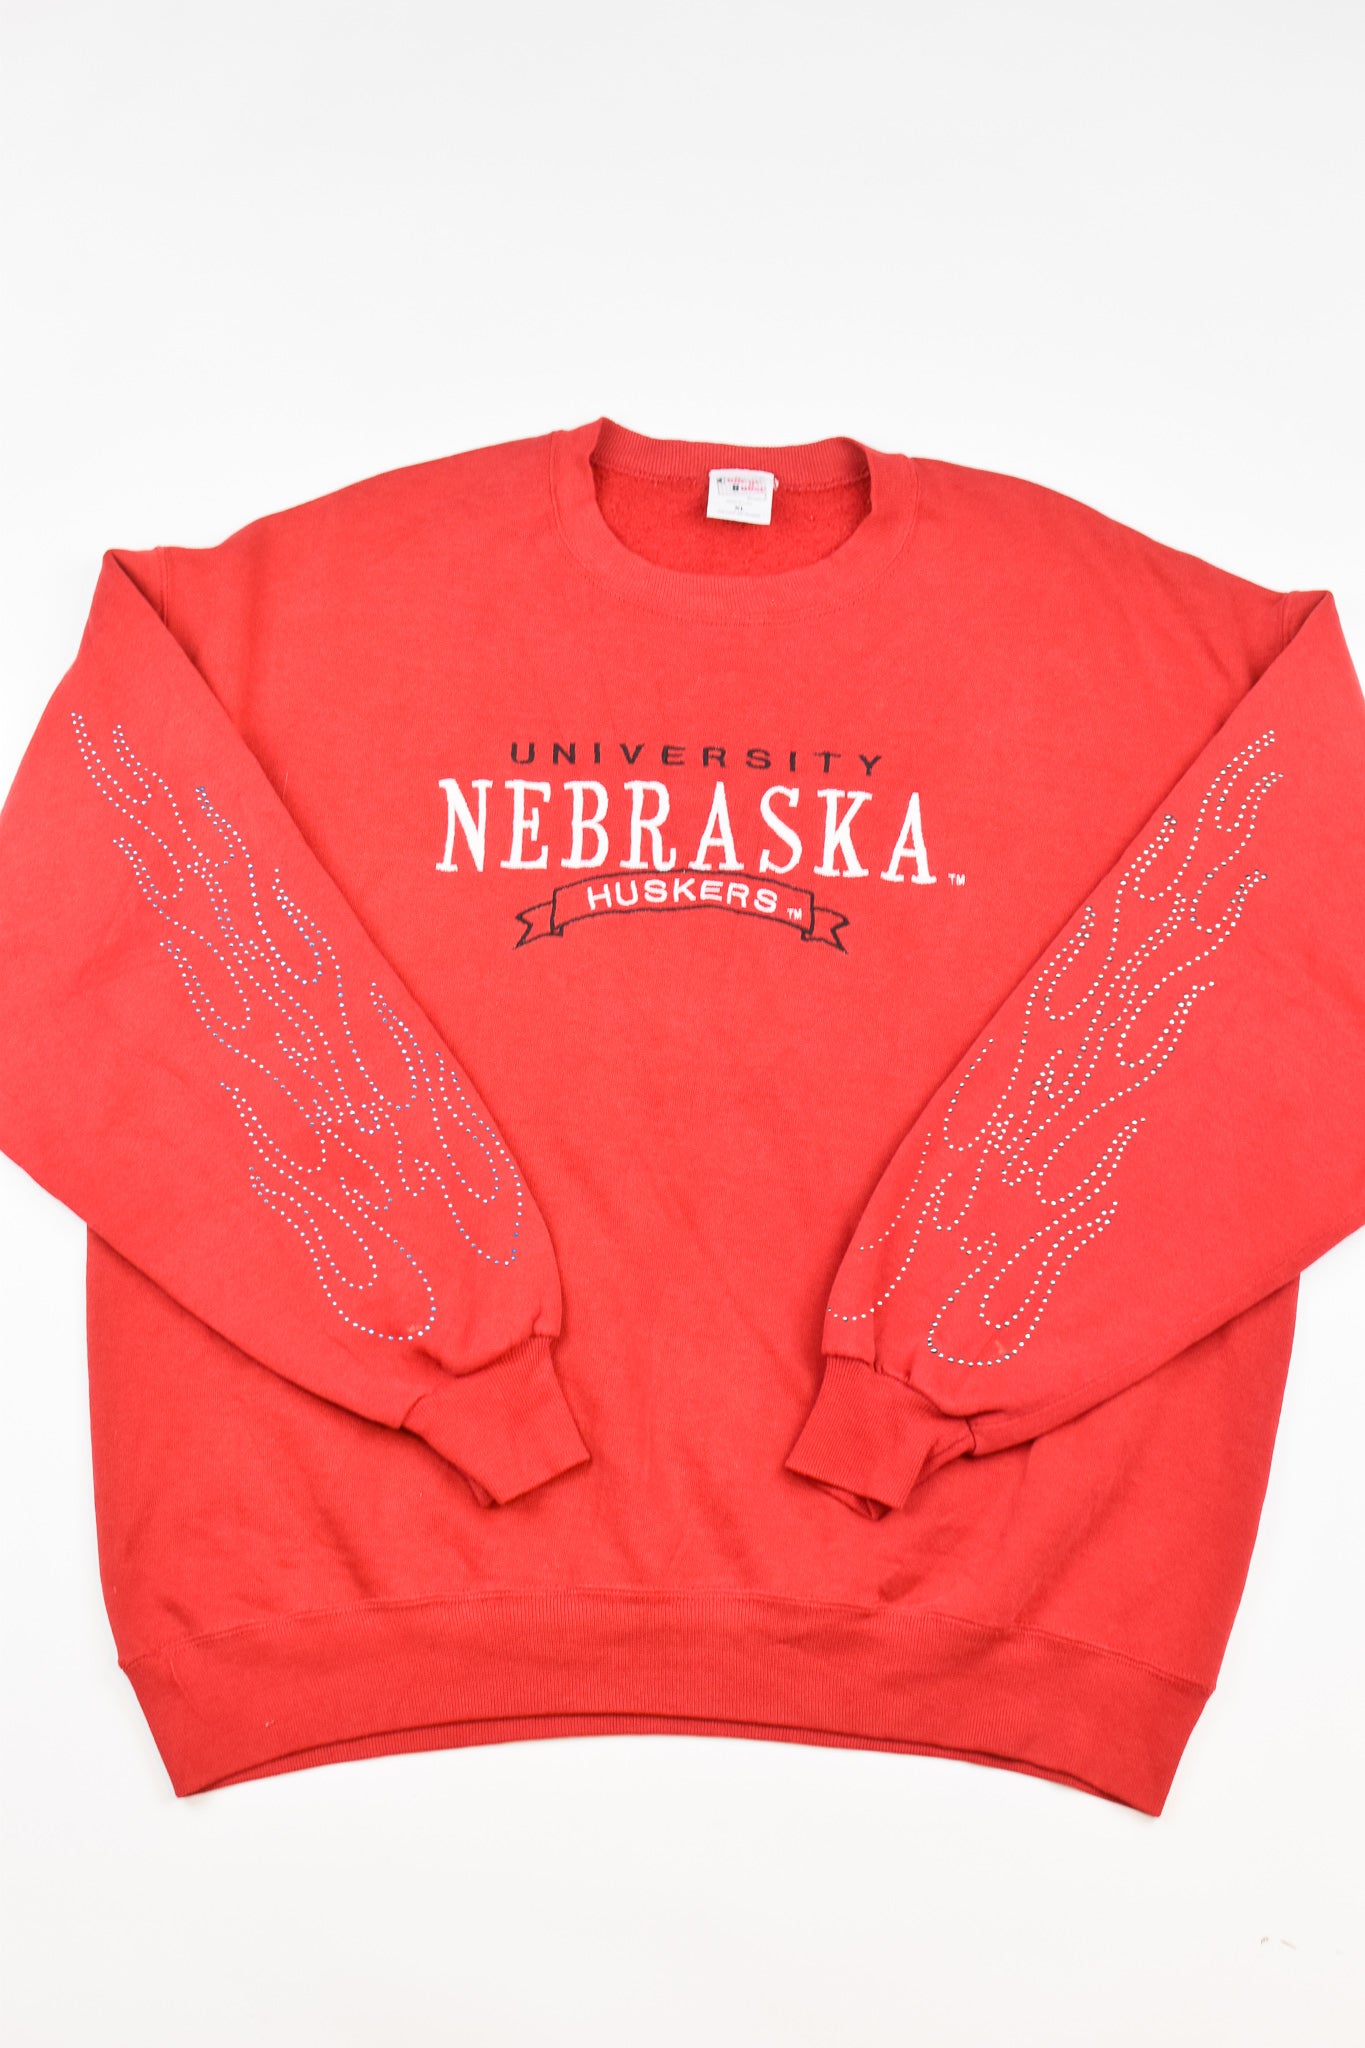 Upcycled Vintage Nebraska Flame Sweatshirt